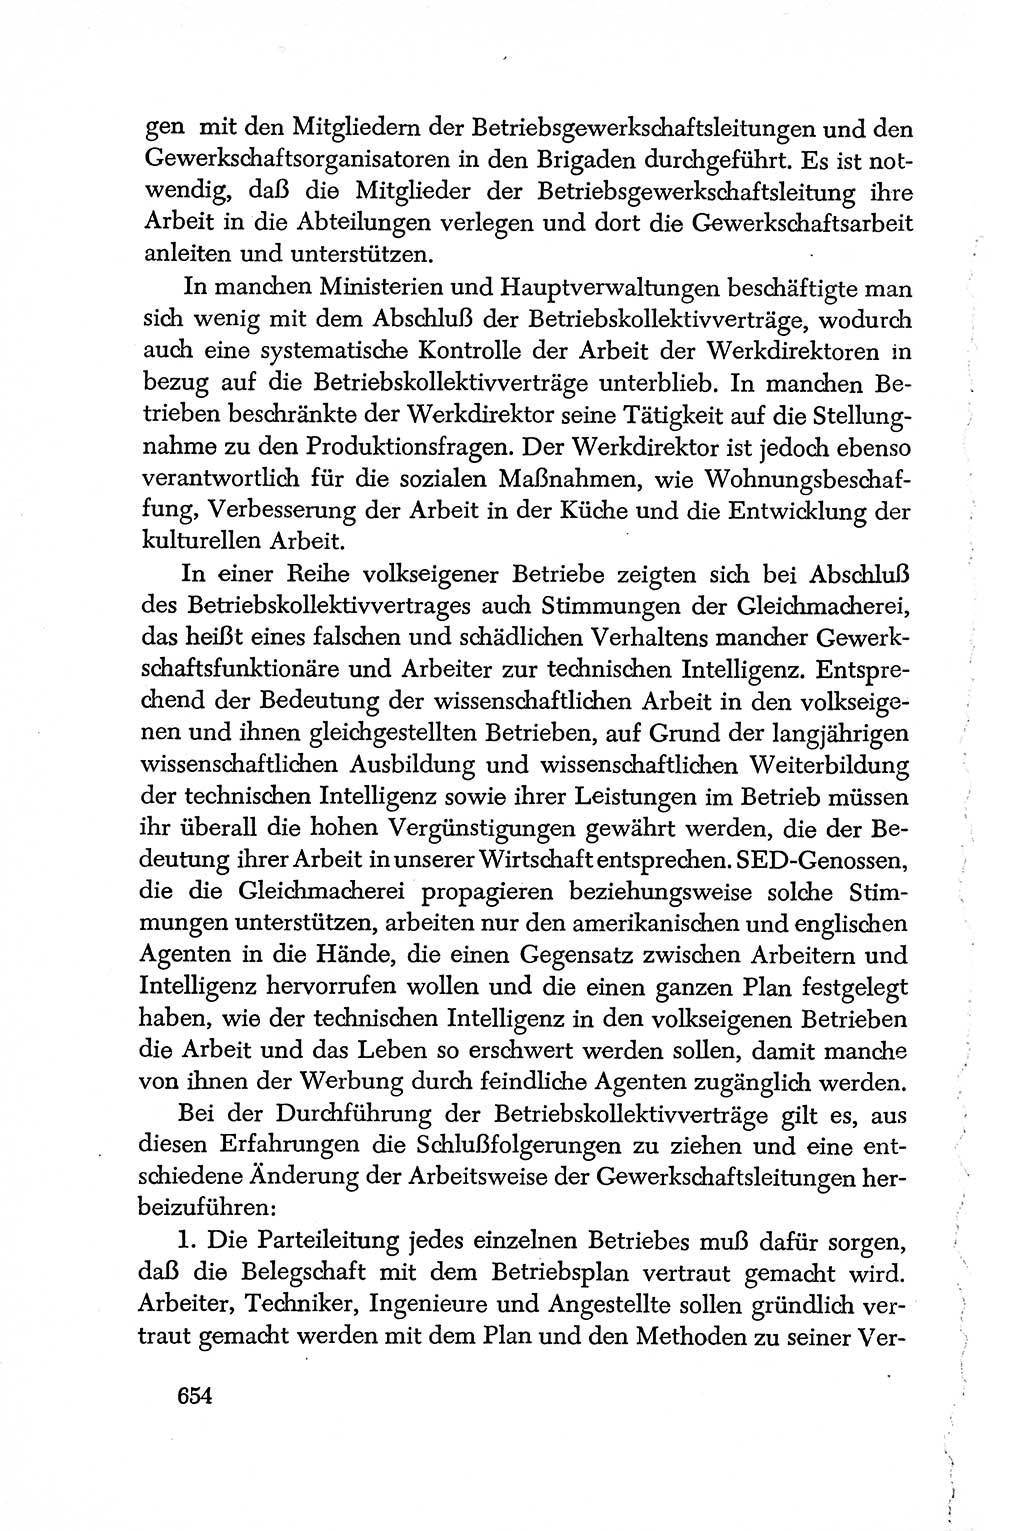 Dokumente der Sozialistischen Einheitspartei Deutschlands (SED) [Deutsche Demokratische Republik (DDR)] 1950-1952, Seite 654 (Dok. SED DDR 1950-1952, S. 654)